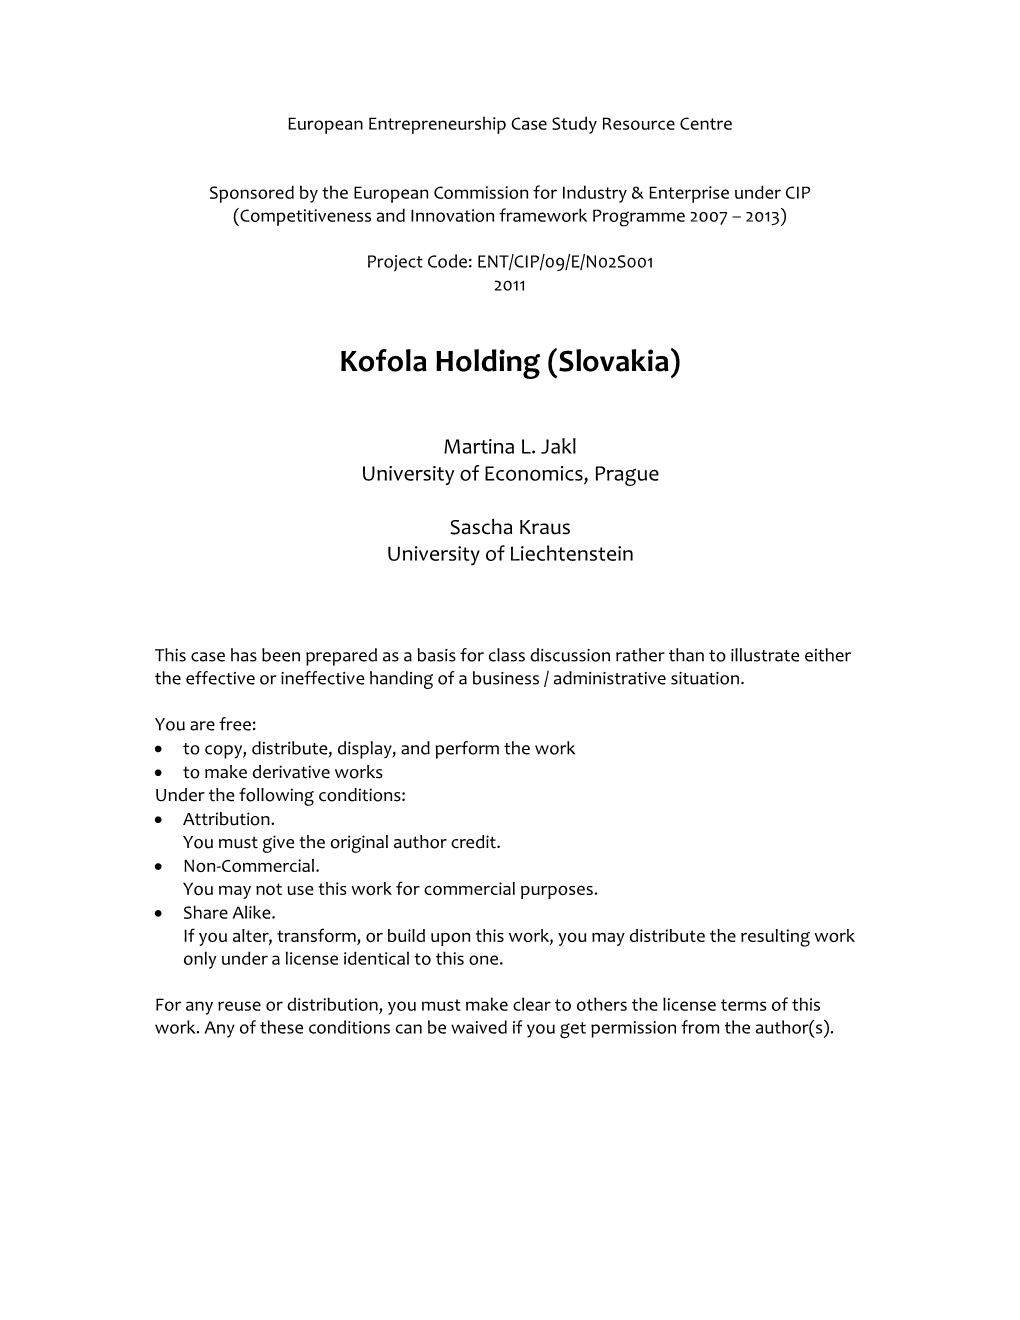 Kofola Holding (Slovakia)